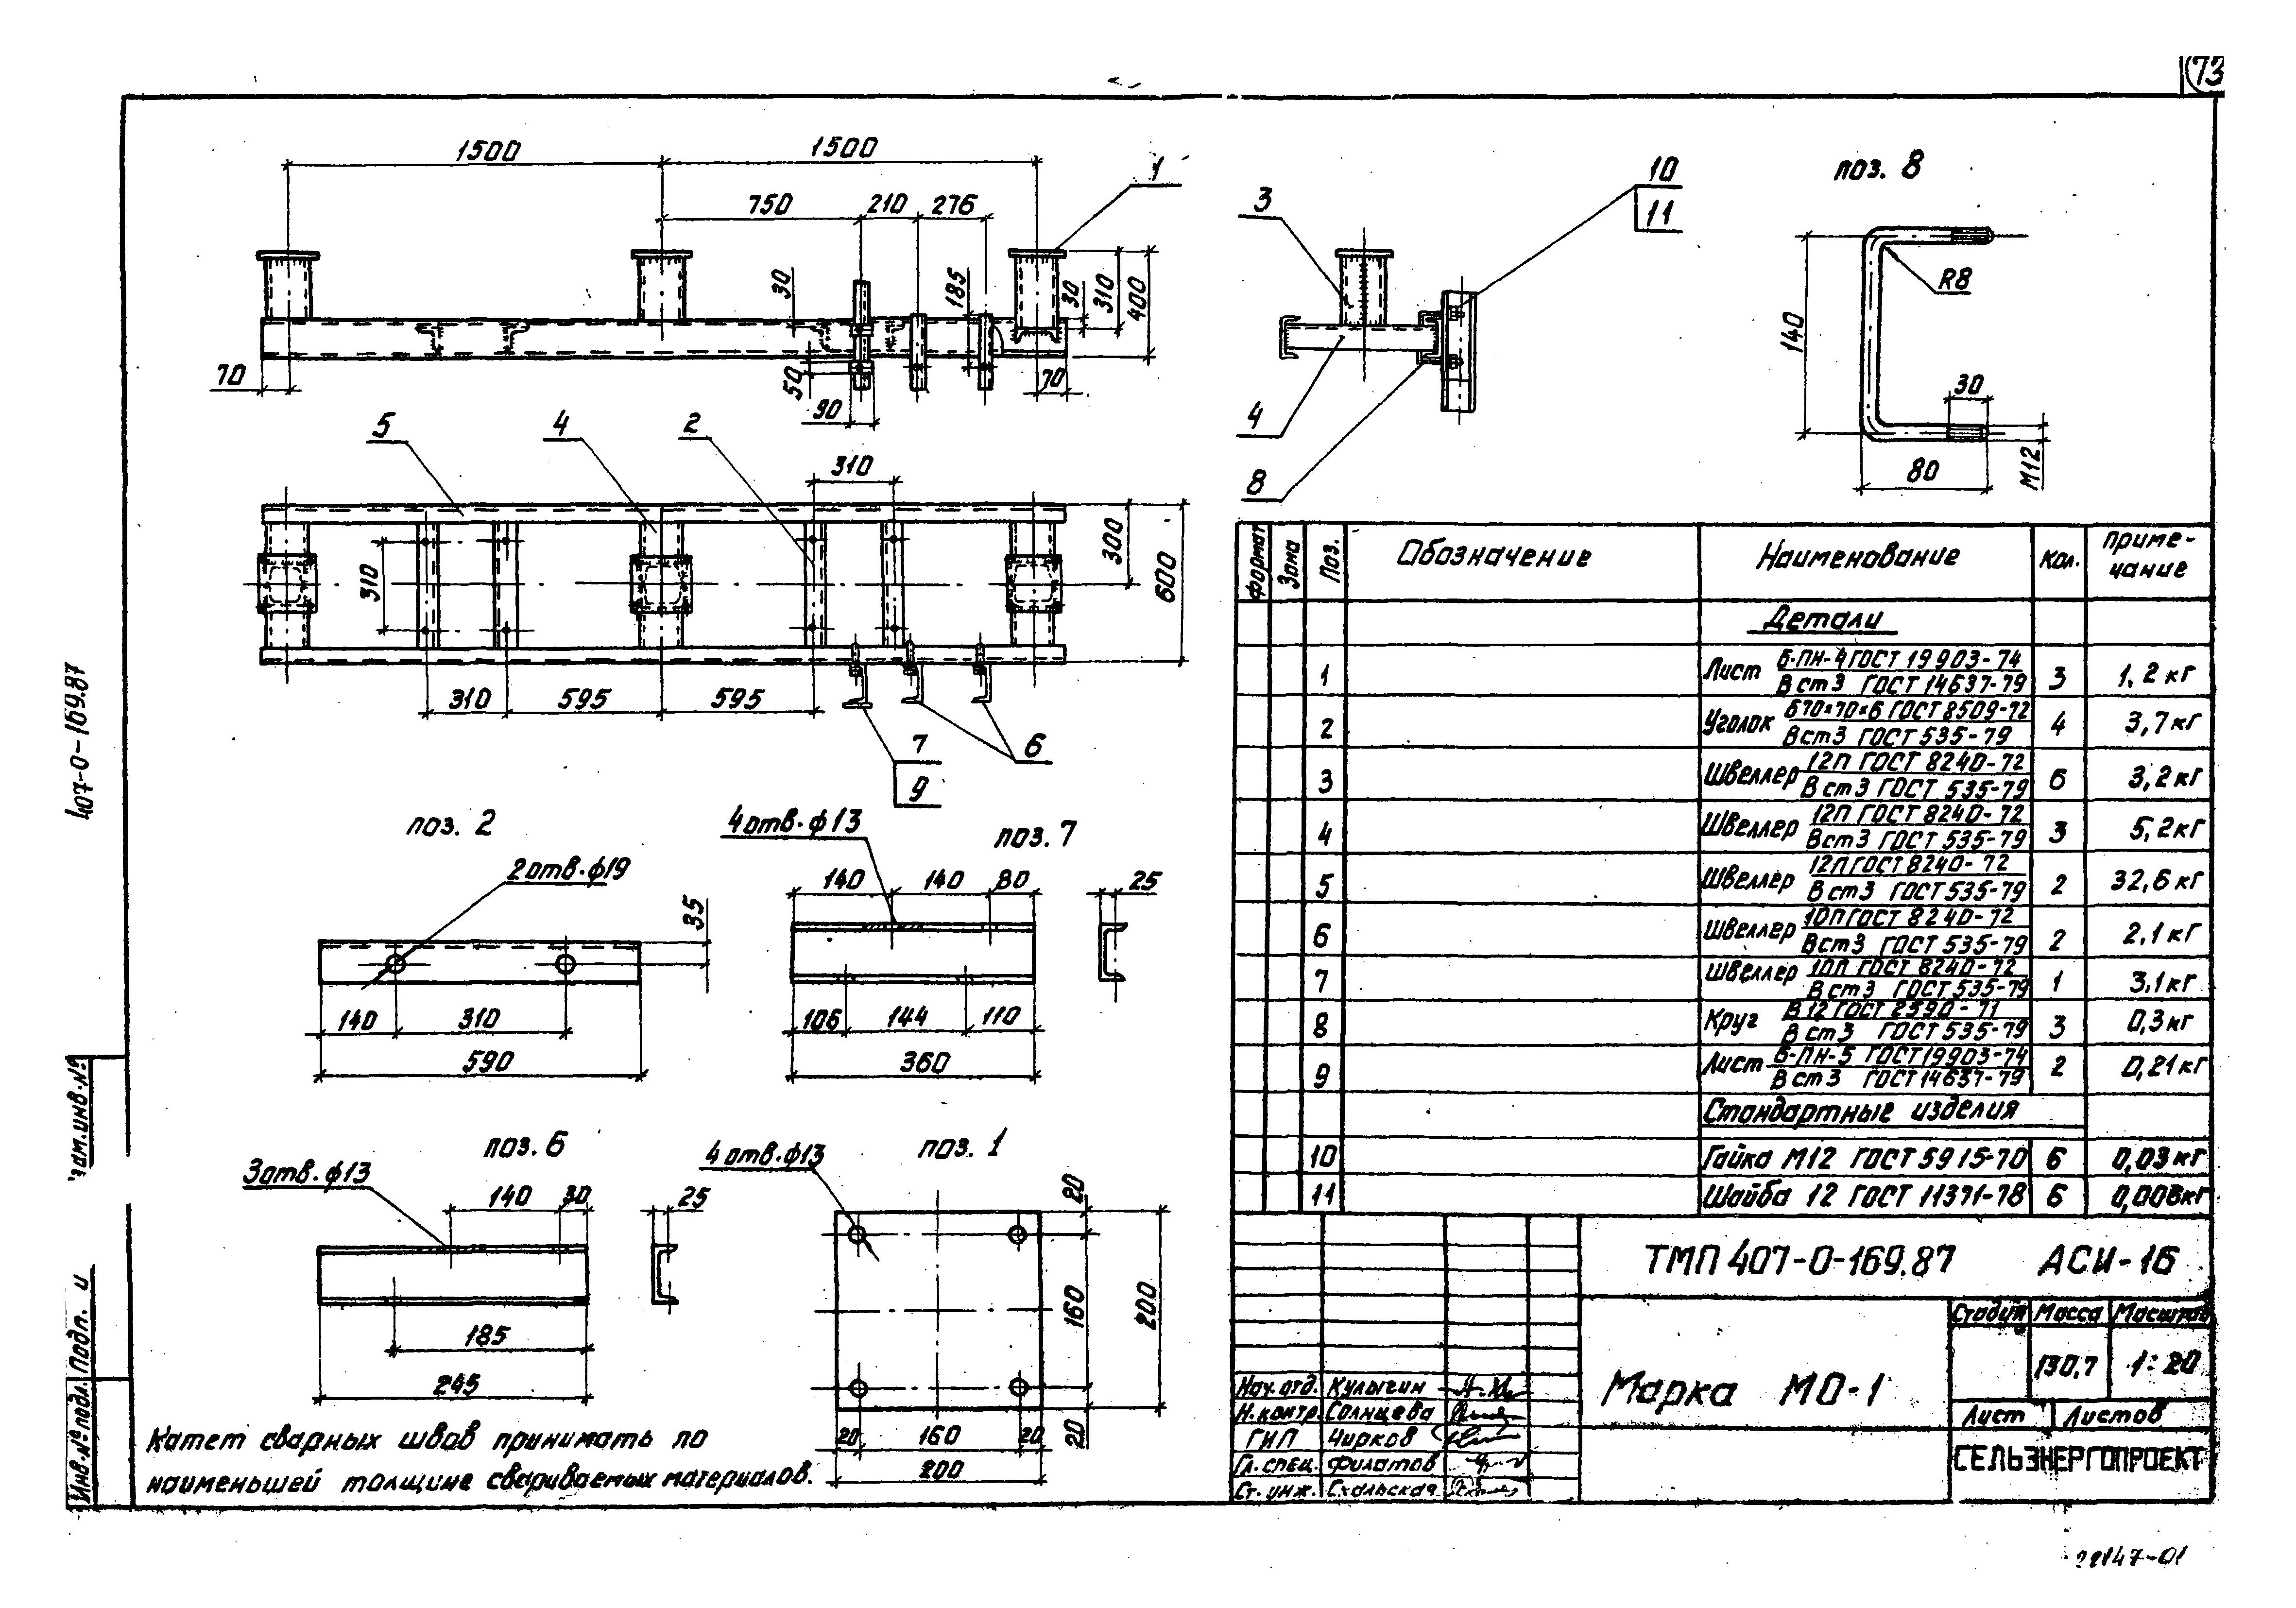 Типовые материалы для проектирования 407-0-169.87